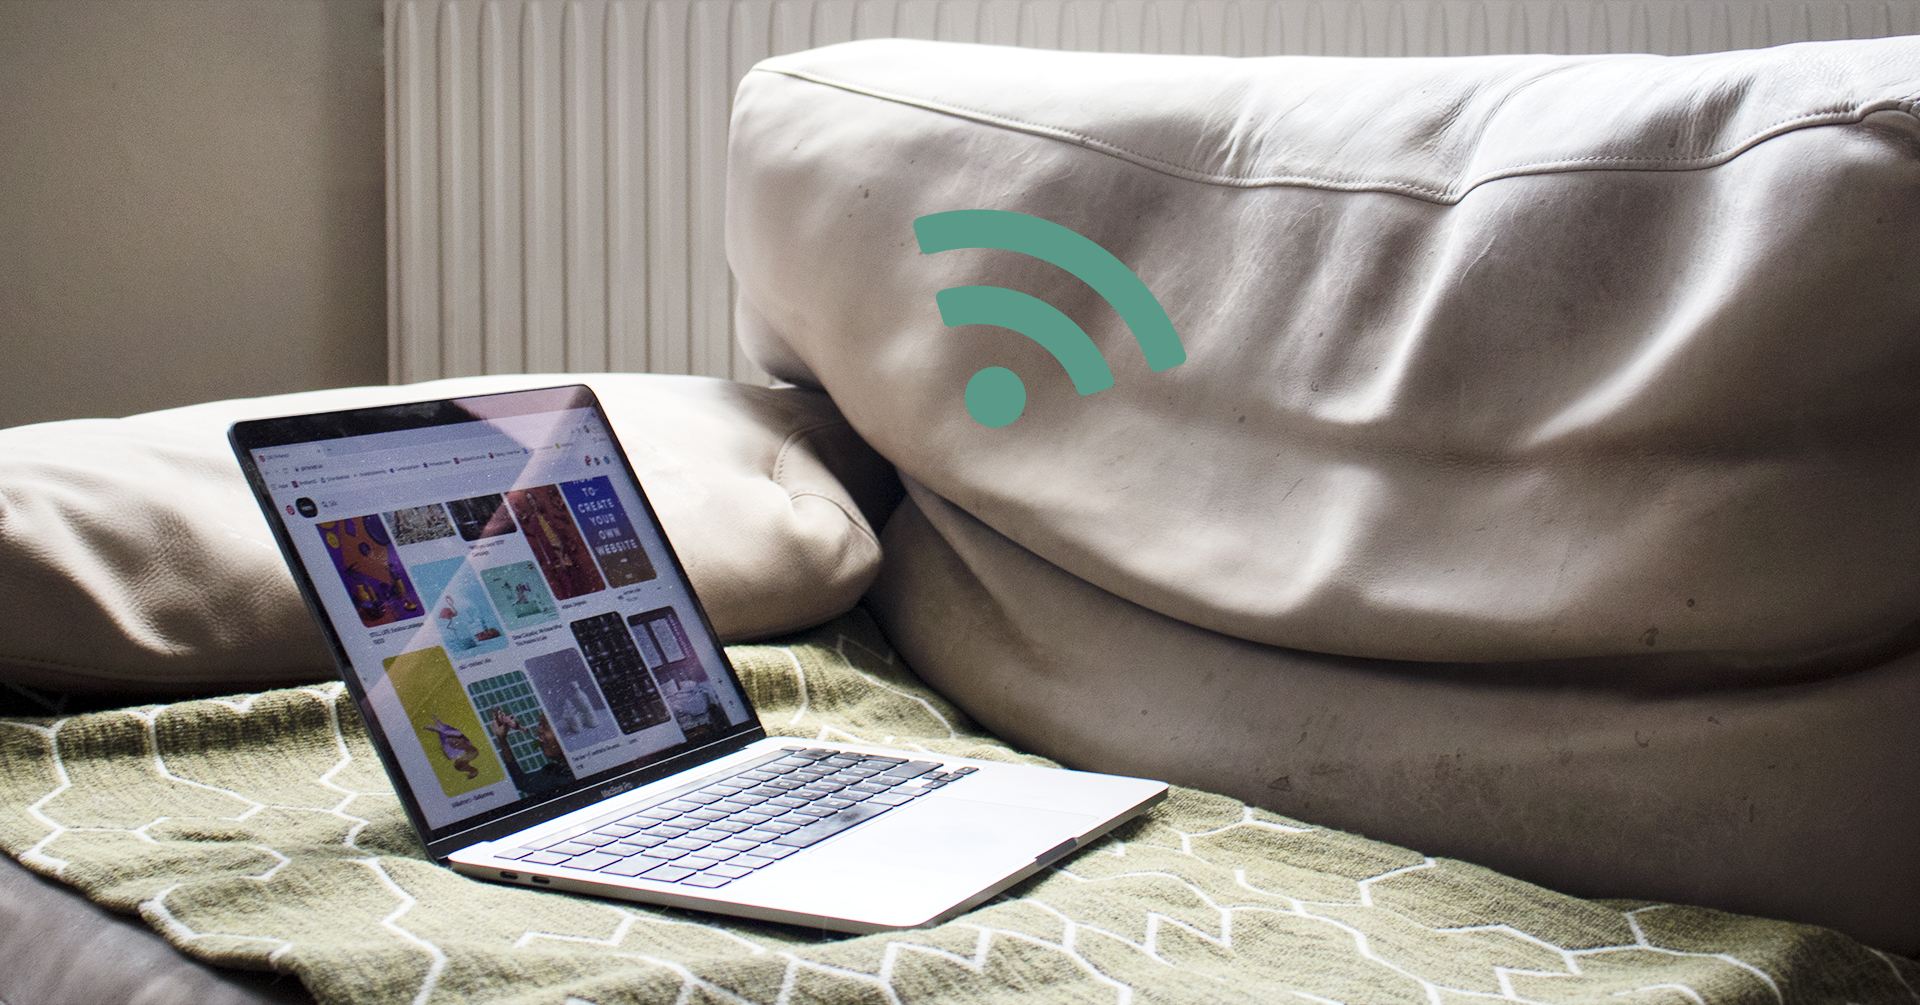 På bilden syns en öppen laptop som ligger på en ljusgrön soffa. Jämte soffan syns en WiFi-symbol i grönt.